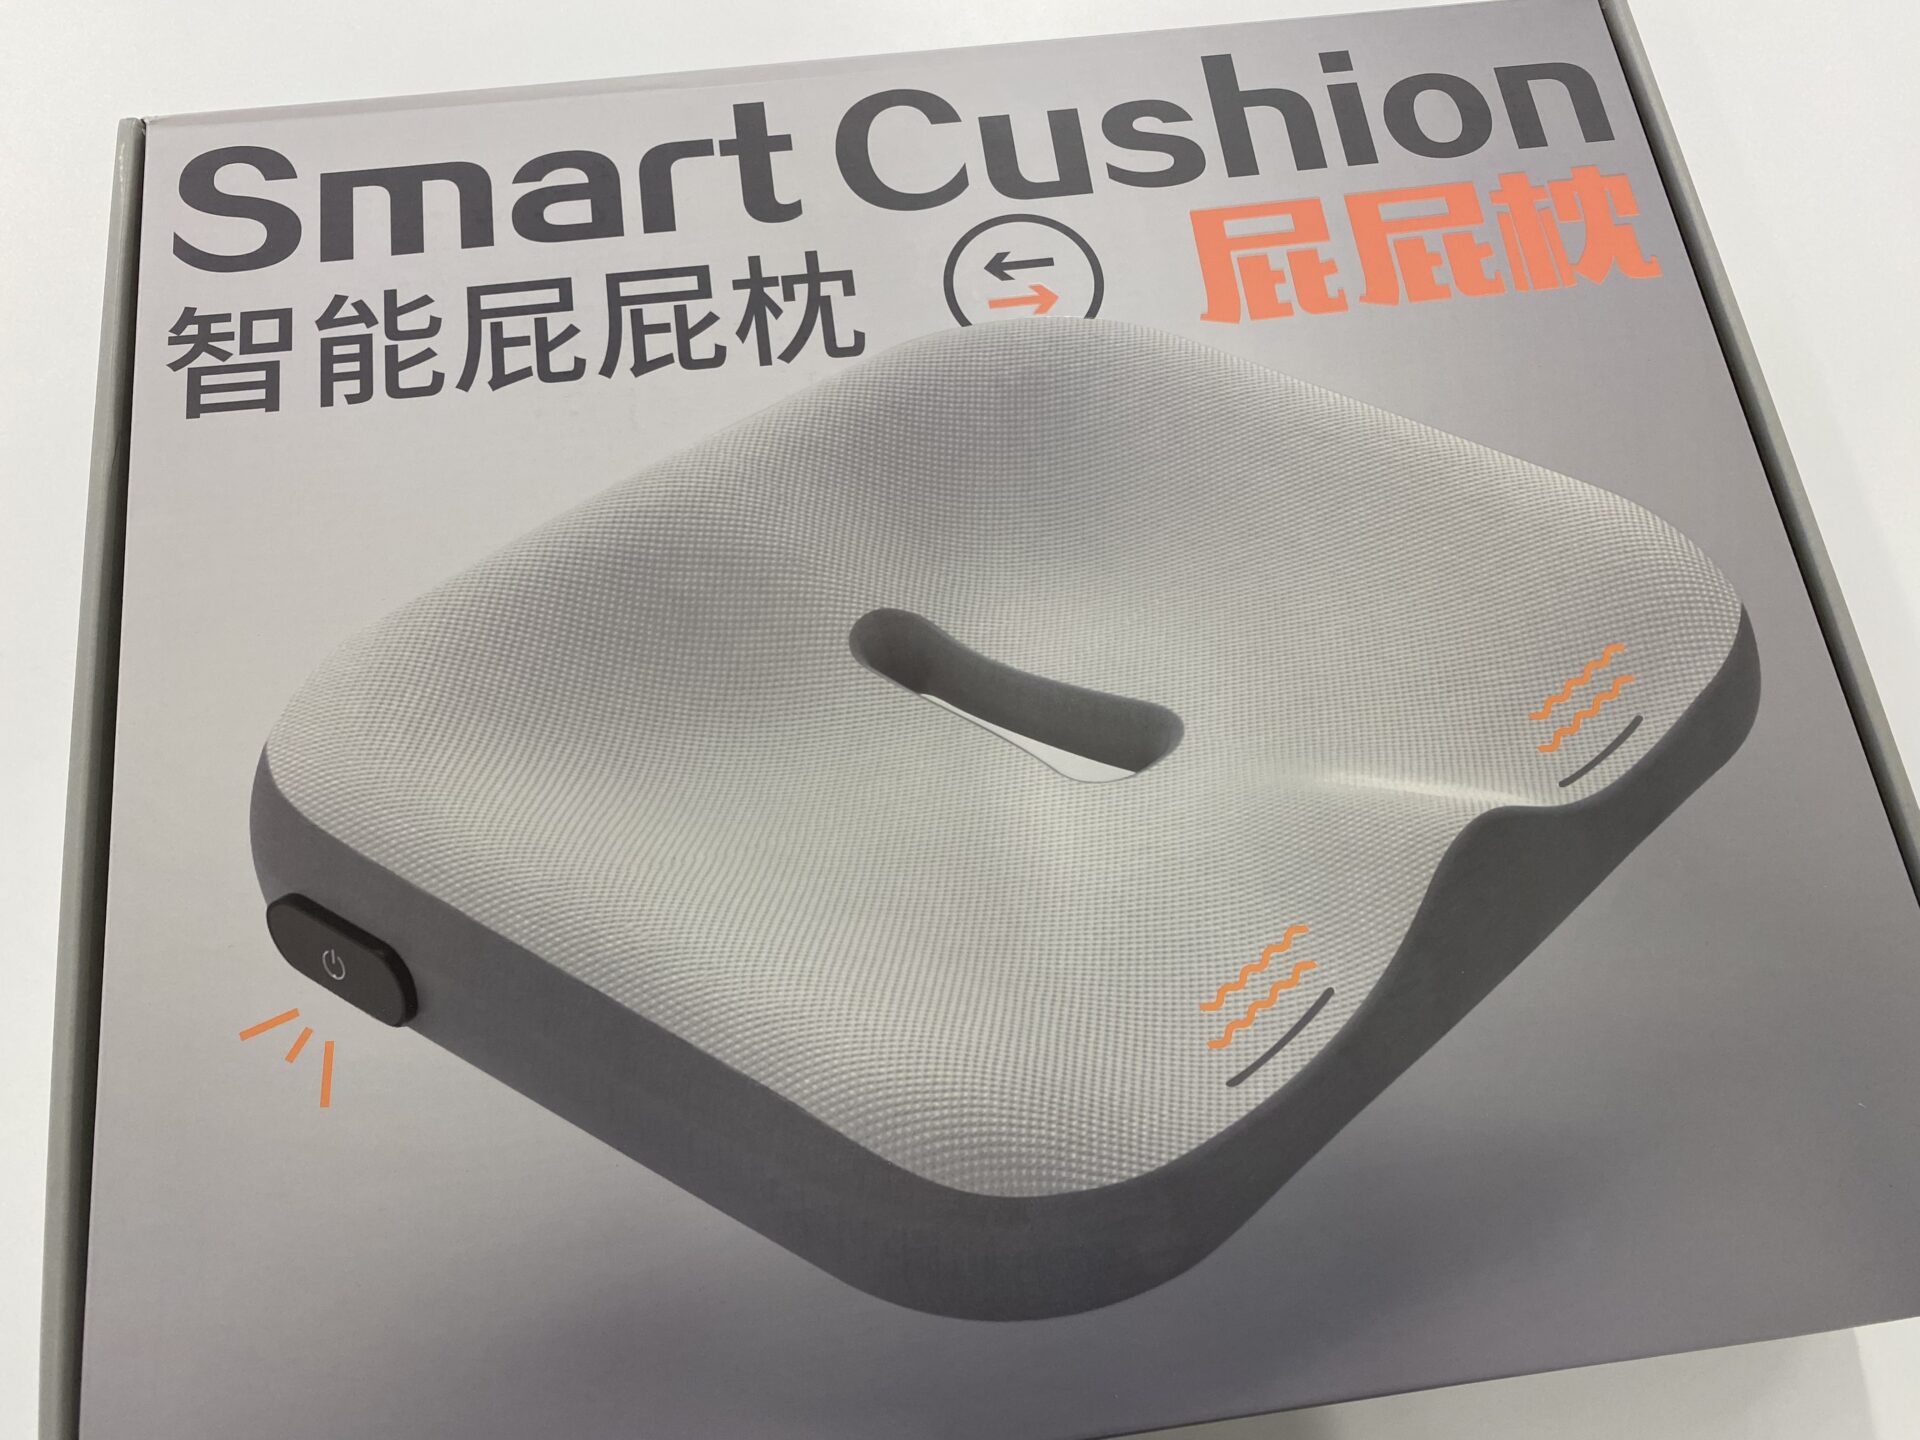 振動でお知らせ足組み防止クッションの外箱の写真。スマートクッション、おそらく中国語で智能屁屁枕と書かれています